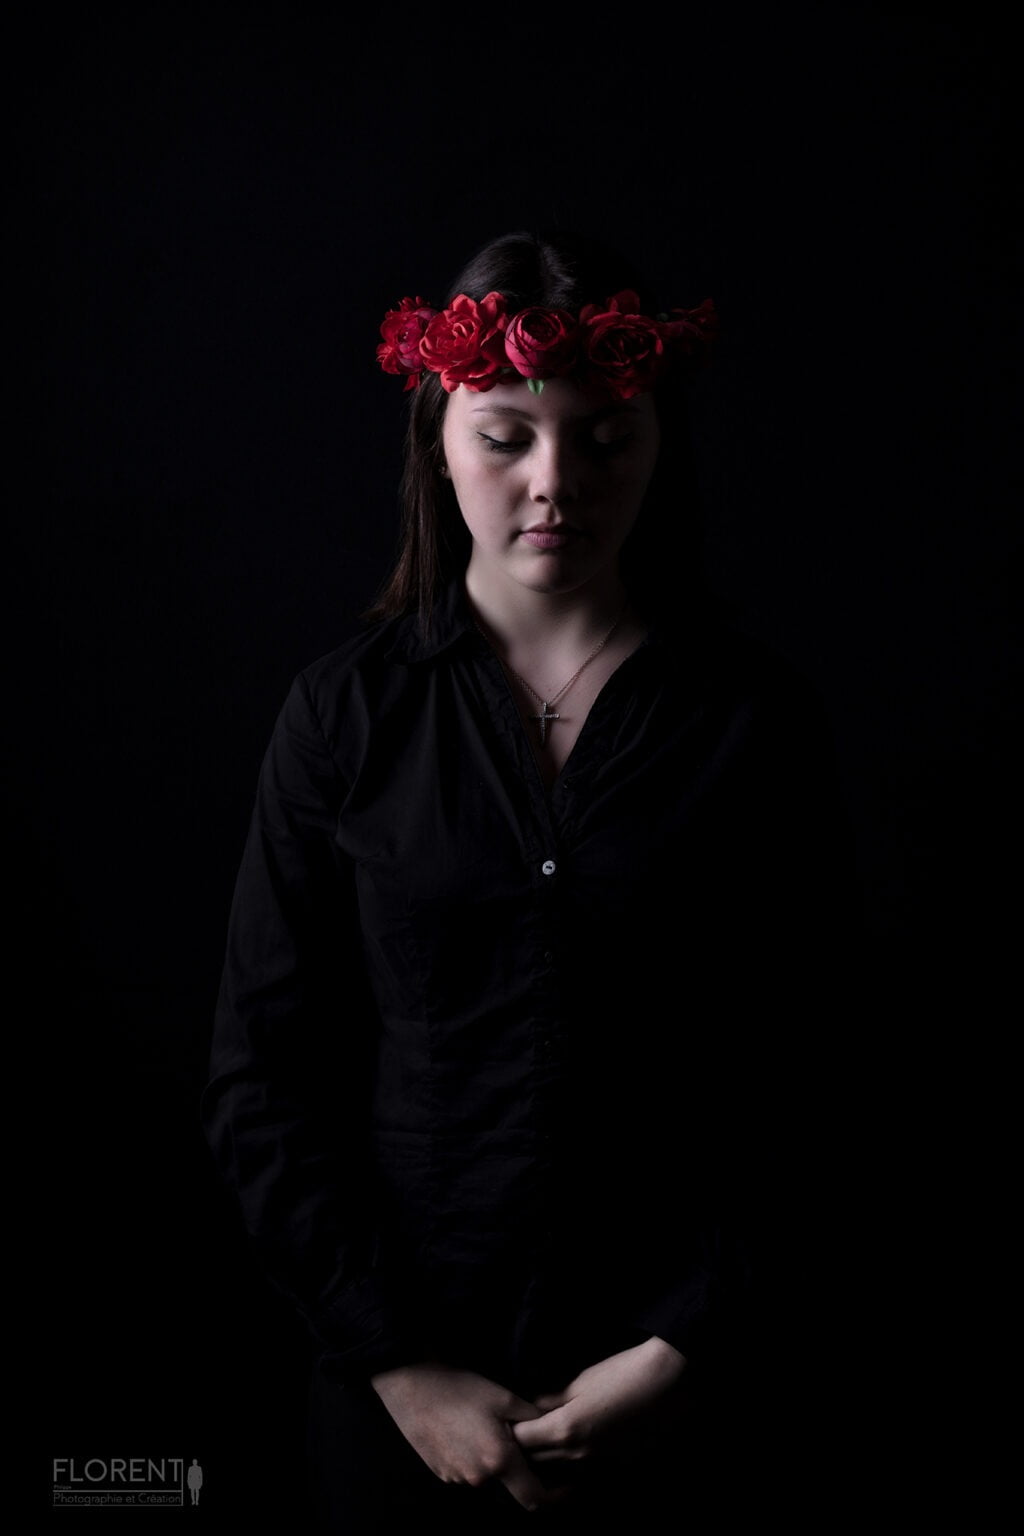 photo book délicate jeune fille sur fonds noir et couronne de fleurs rouges est pensive studio florent lille boulogne sur mer